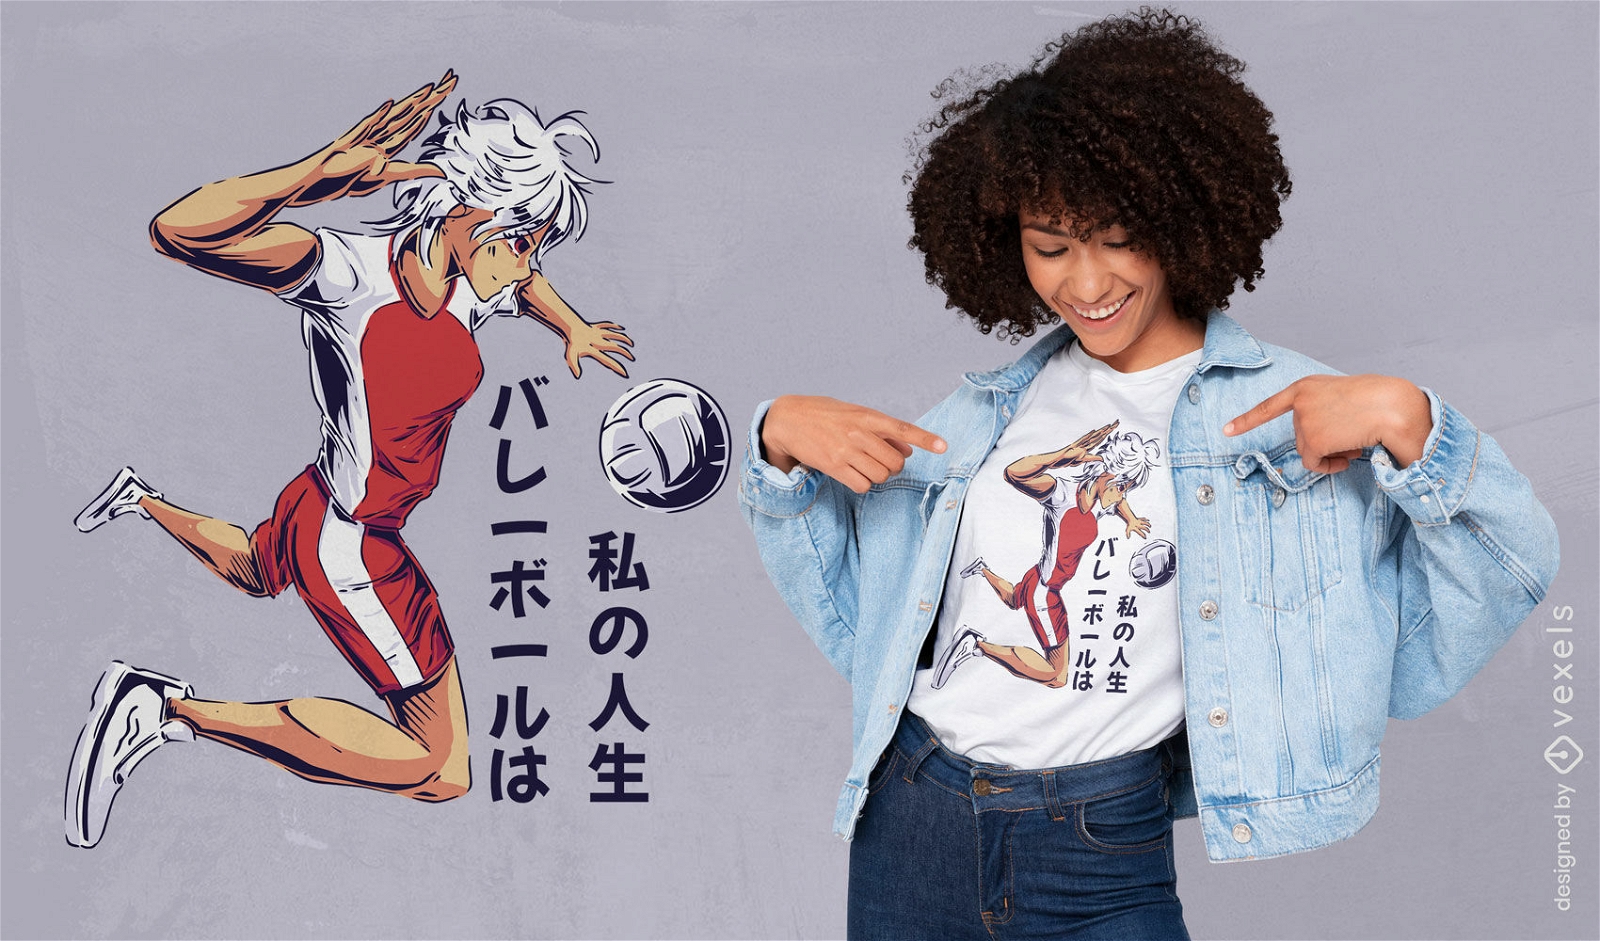 Garota de anime jogando design de camiseta de v?lei